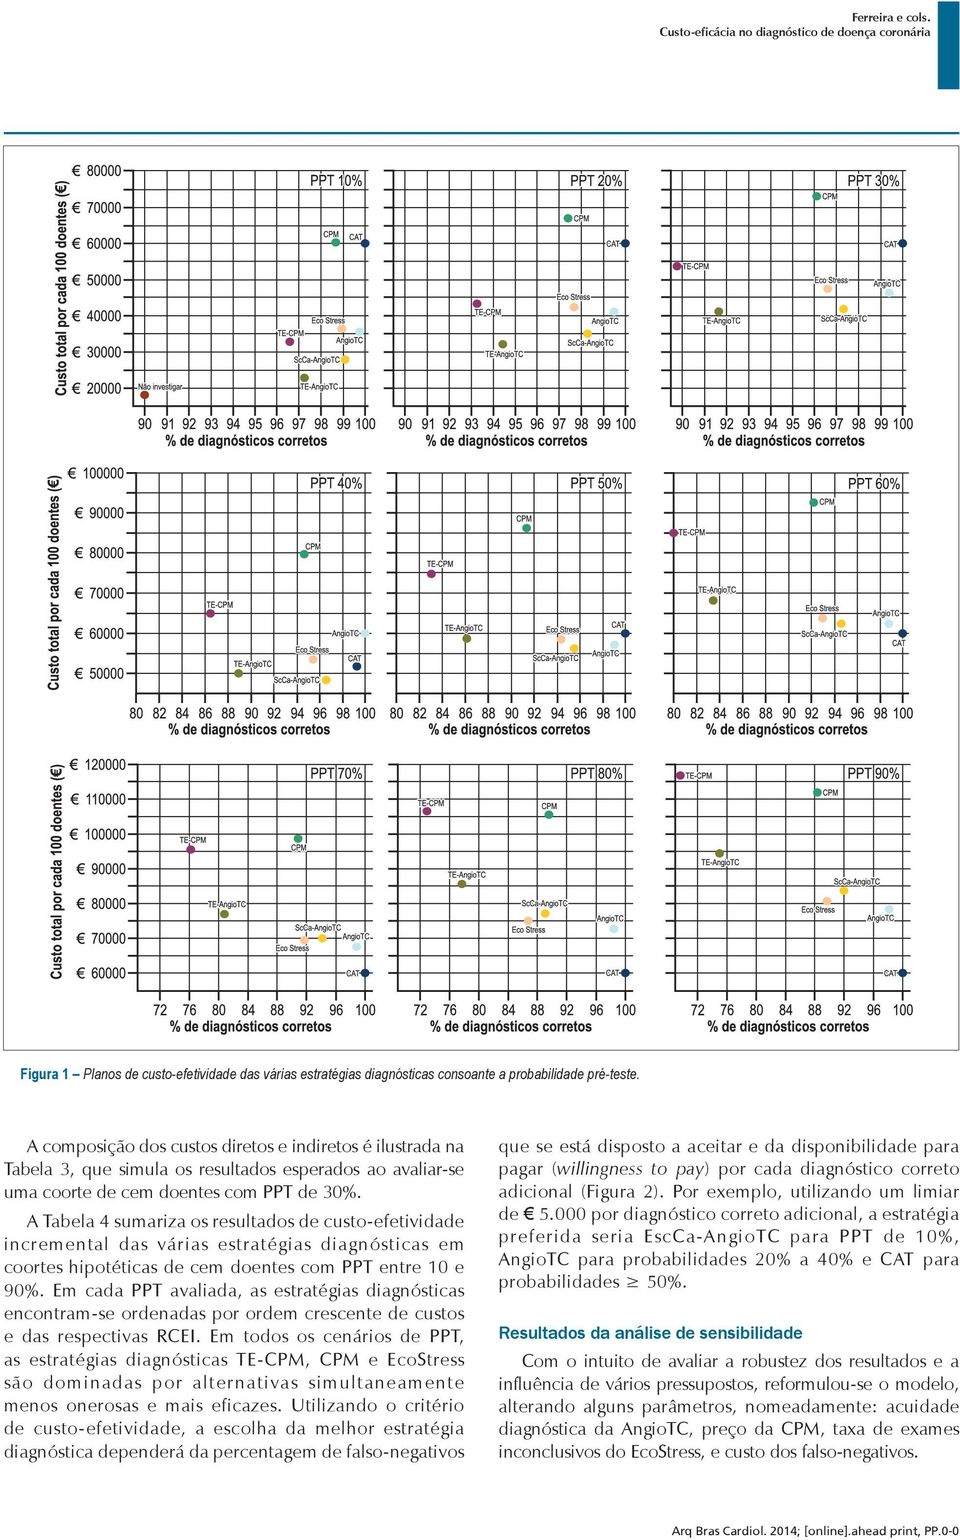 A Tabela 4 sumariza os resultados de custo-efetividade incremental das várias estratégias diagnósticas em coortes hipotéticas de cem doentes com PPT entre 10 e 90%.